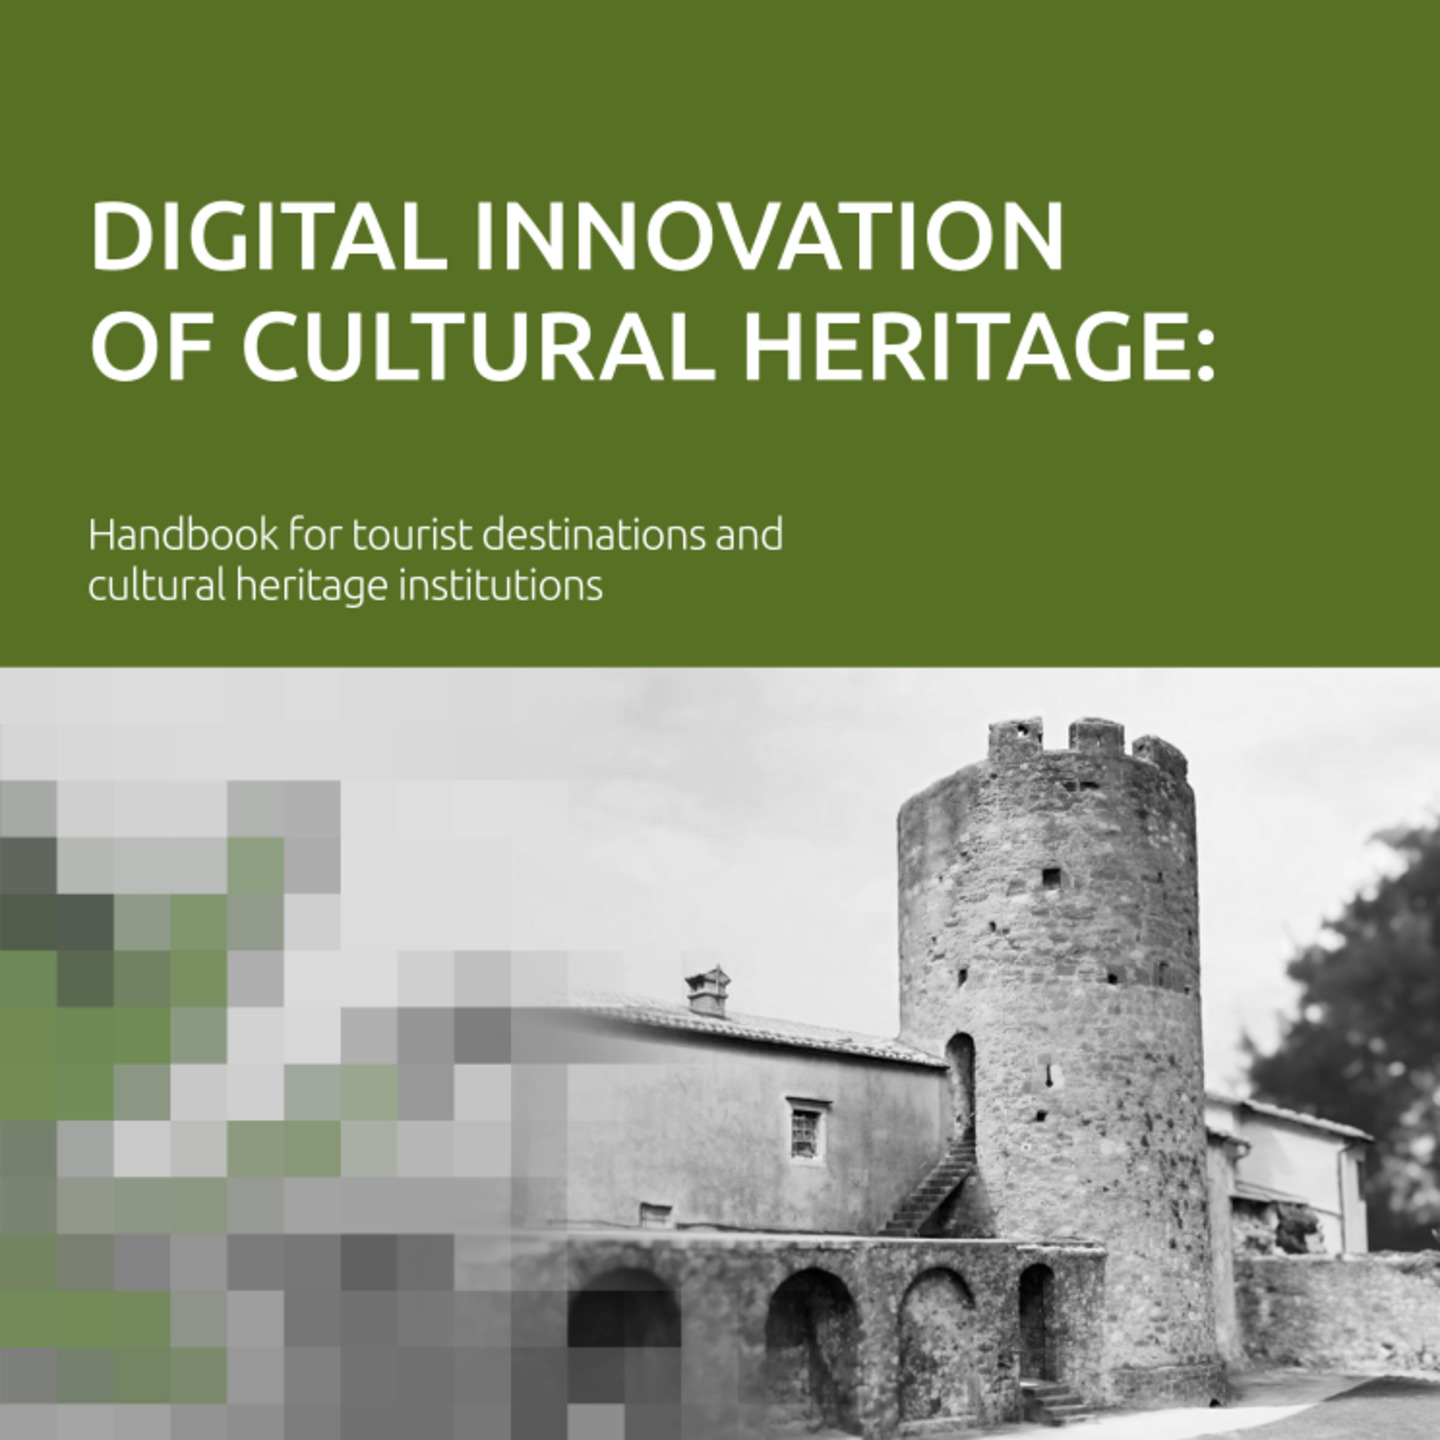 Handbook on Digital Innovation of Cultural Heritage